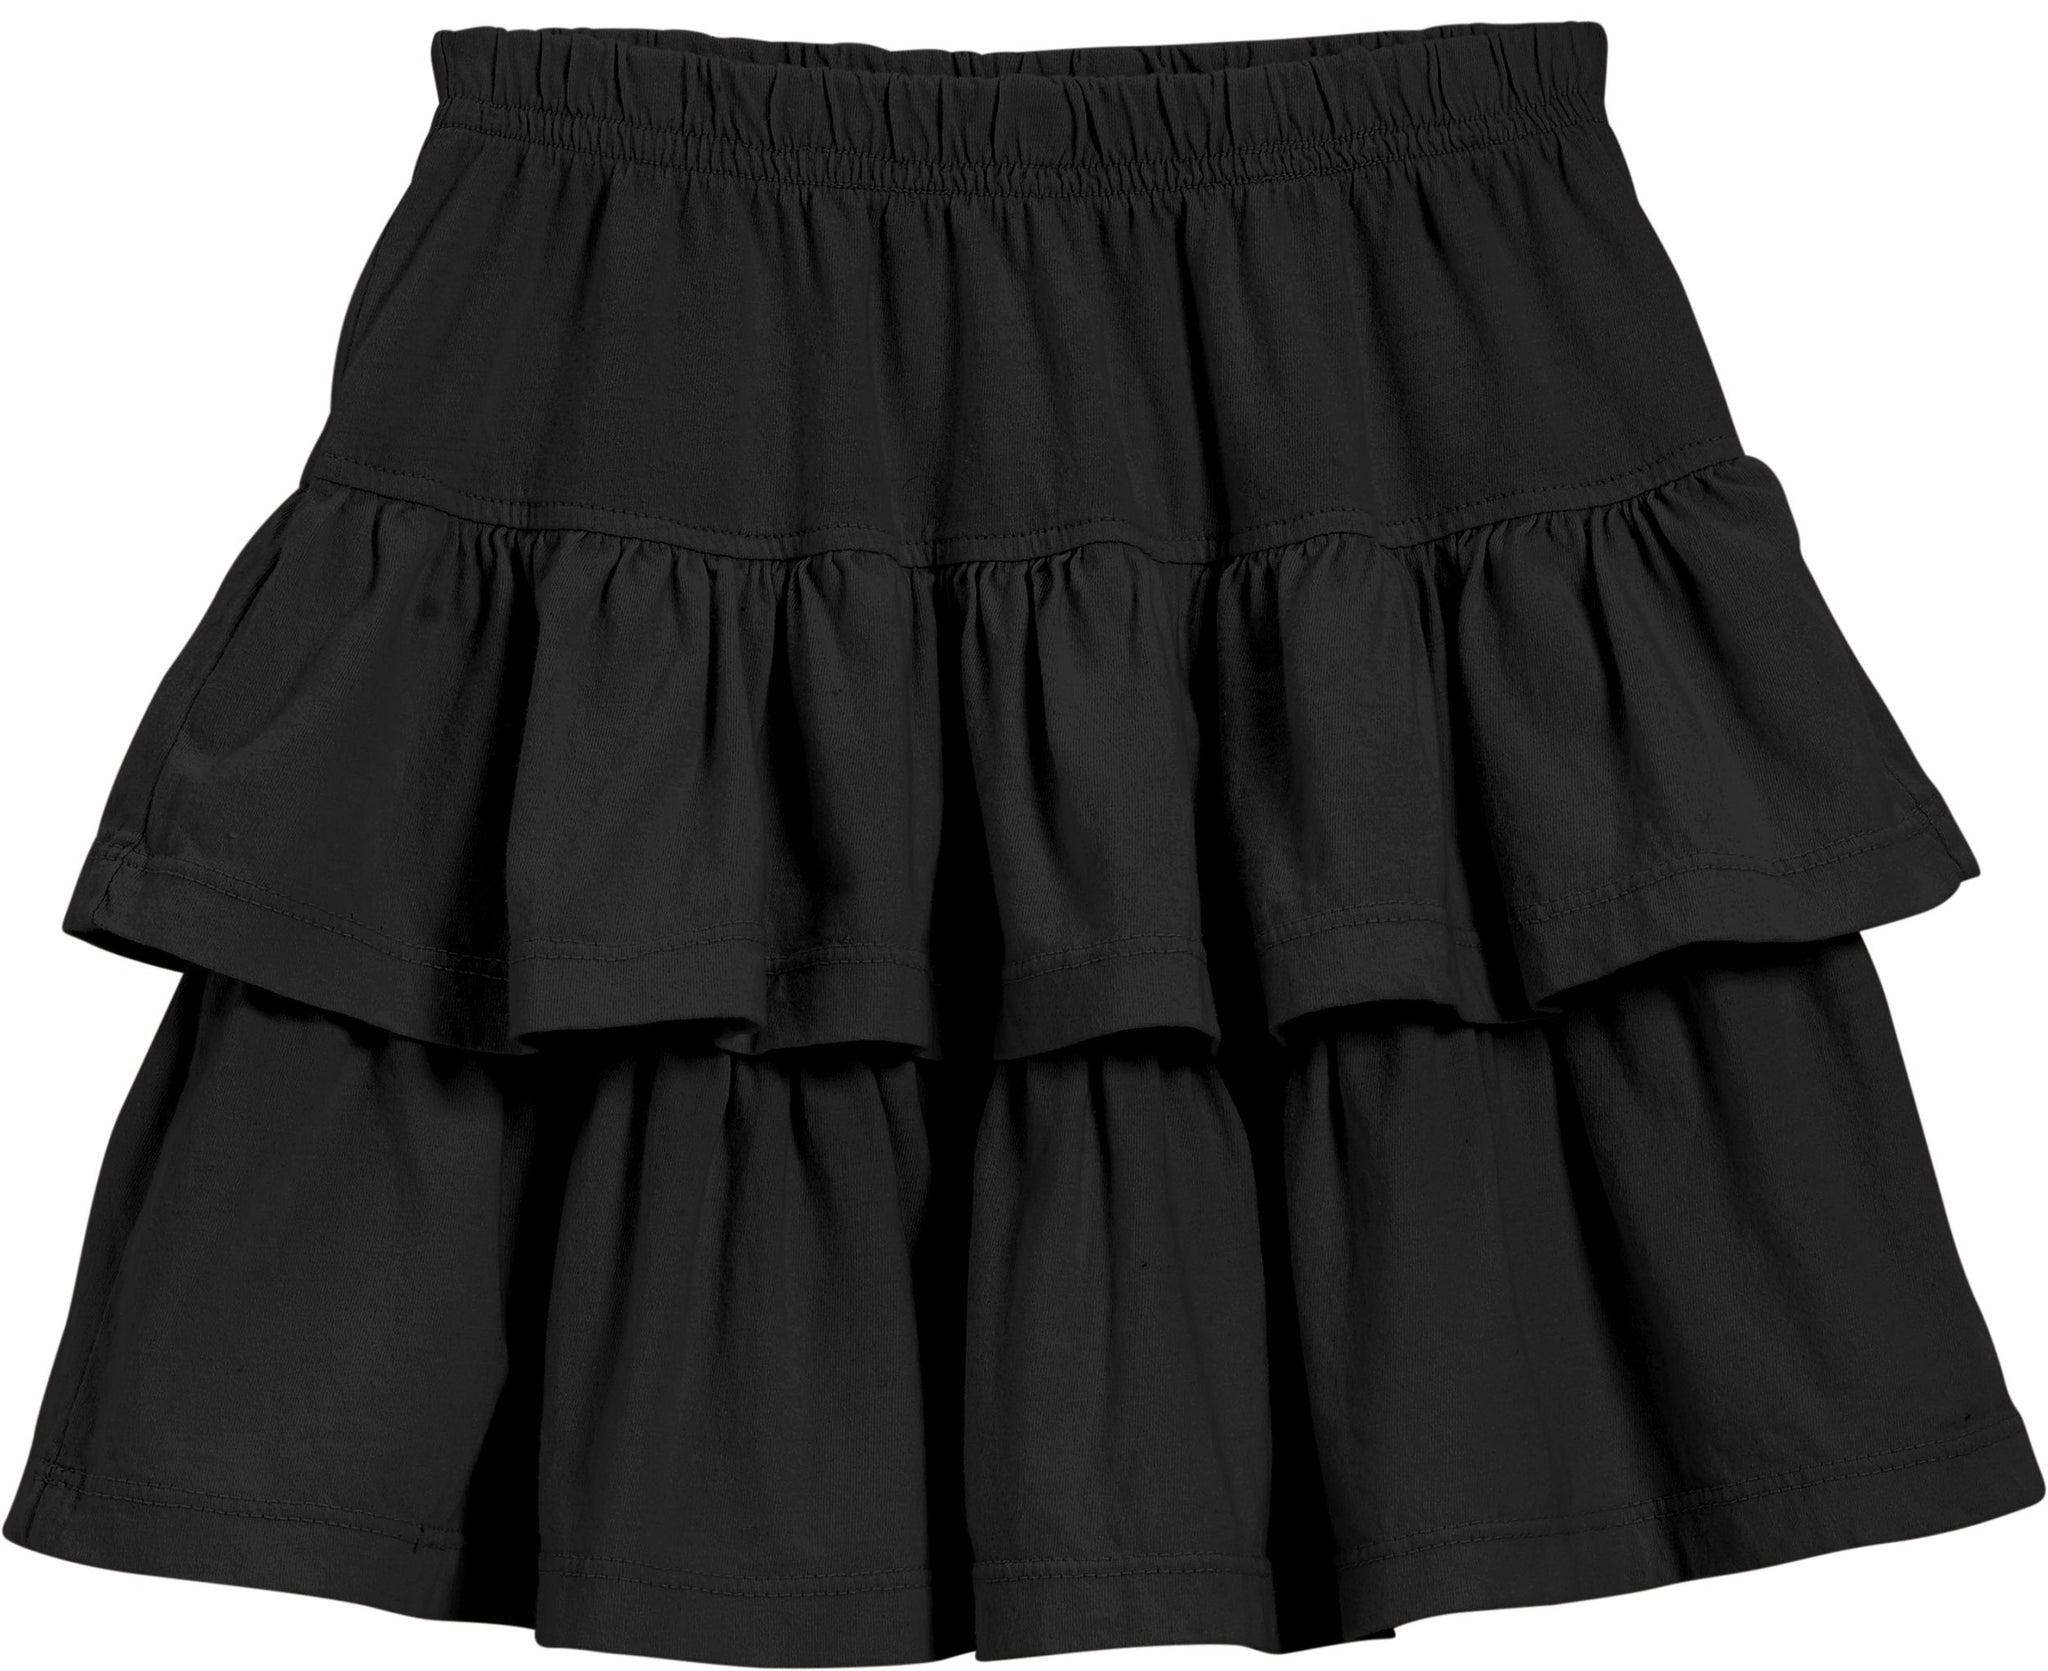 Girls Soft Cotton Jersey Tiered Skirt - City Threads USA